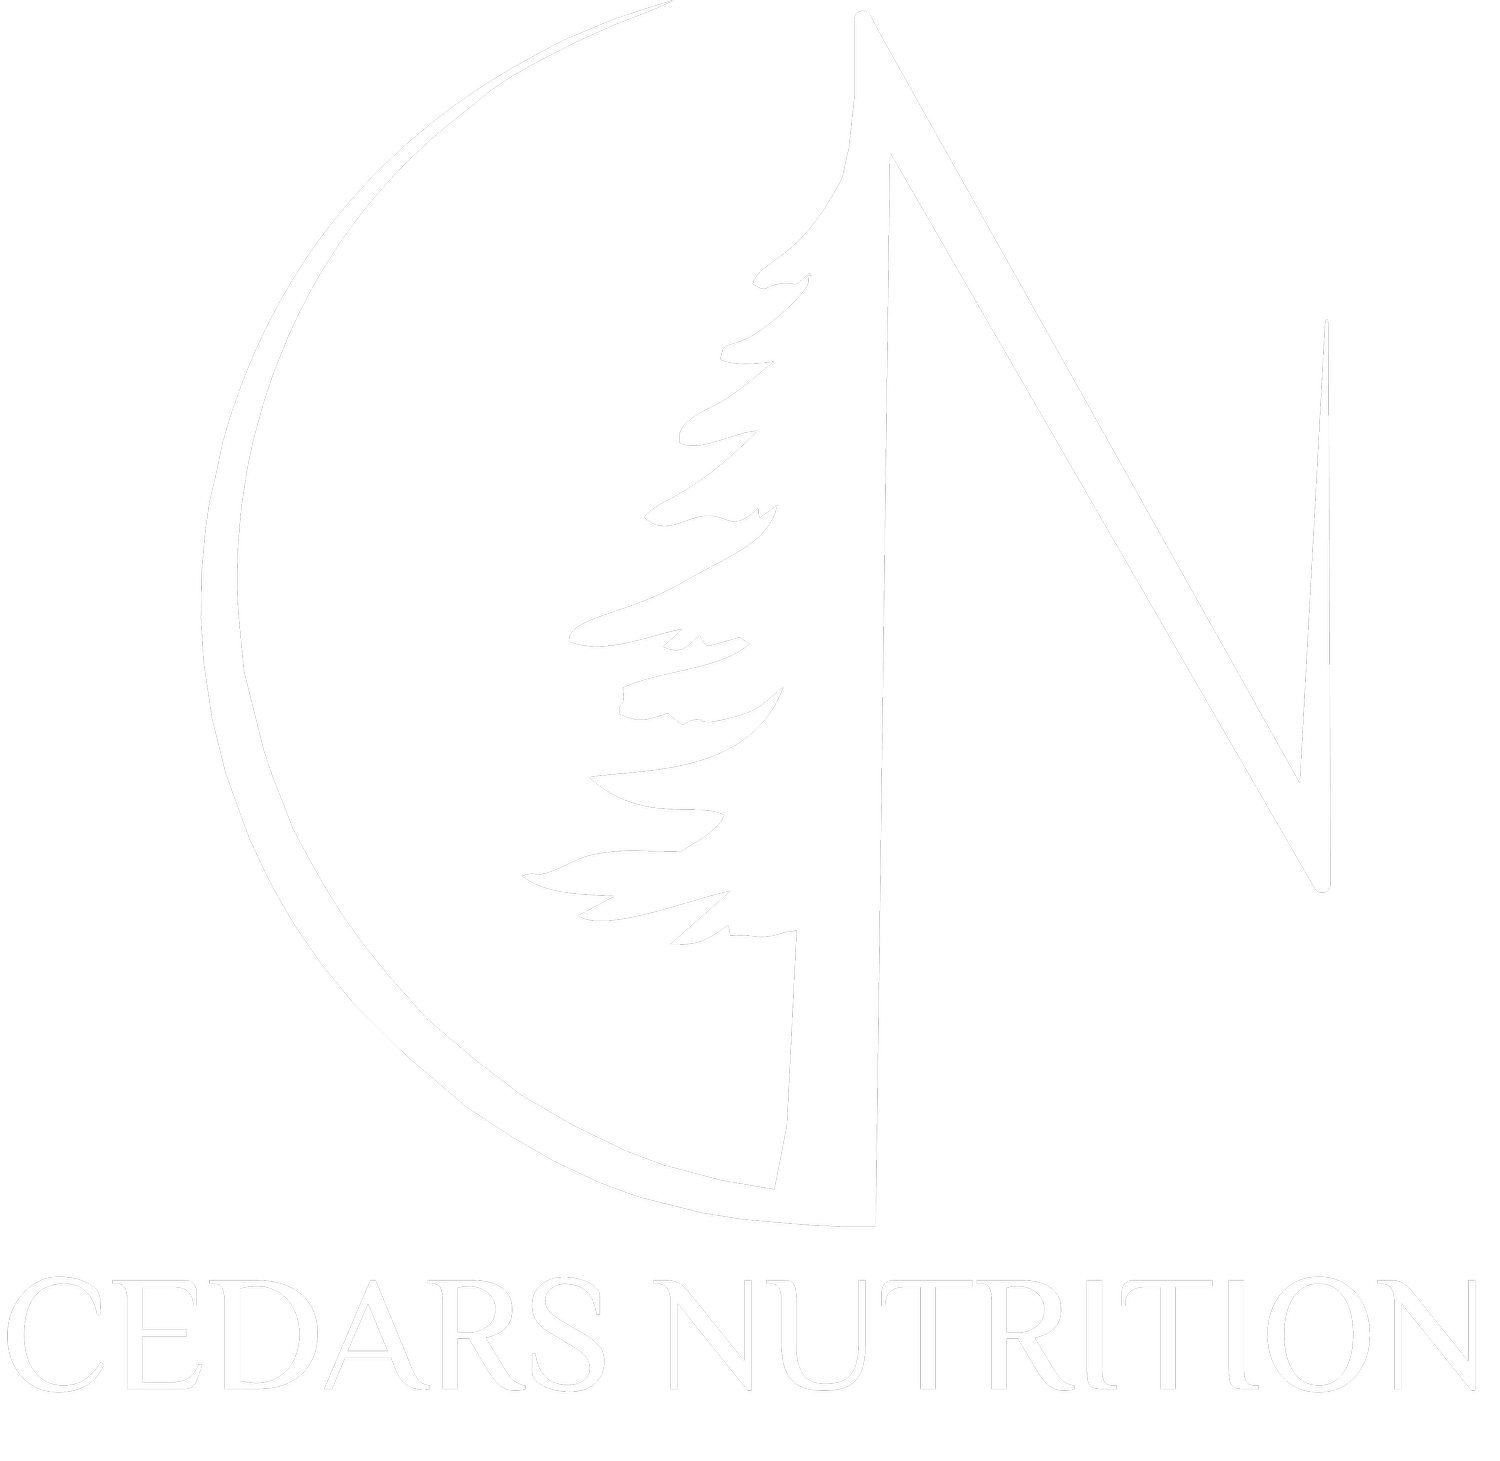 Cedars Nutrition